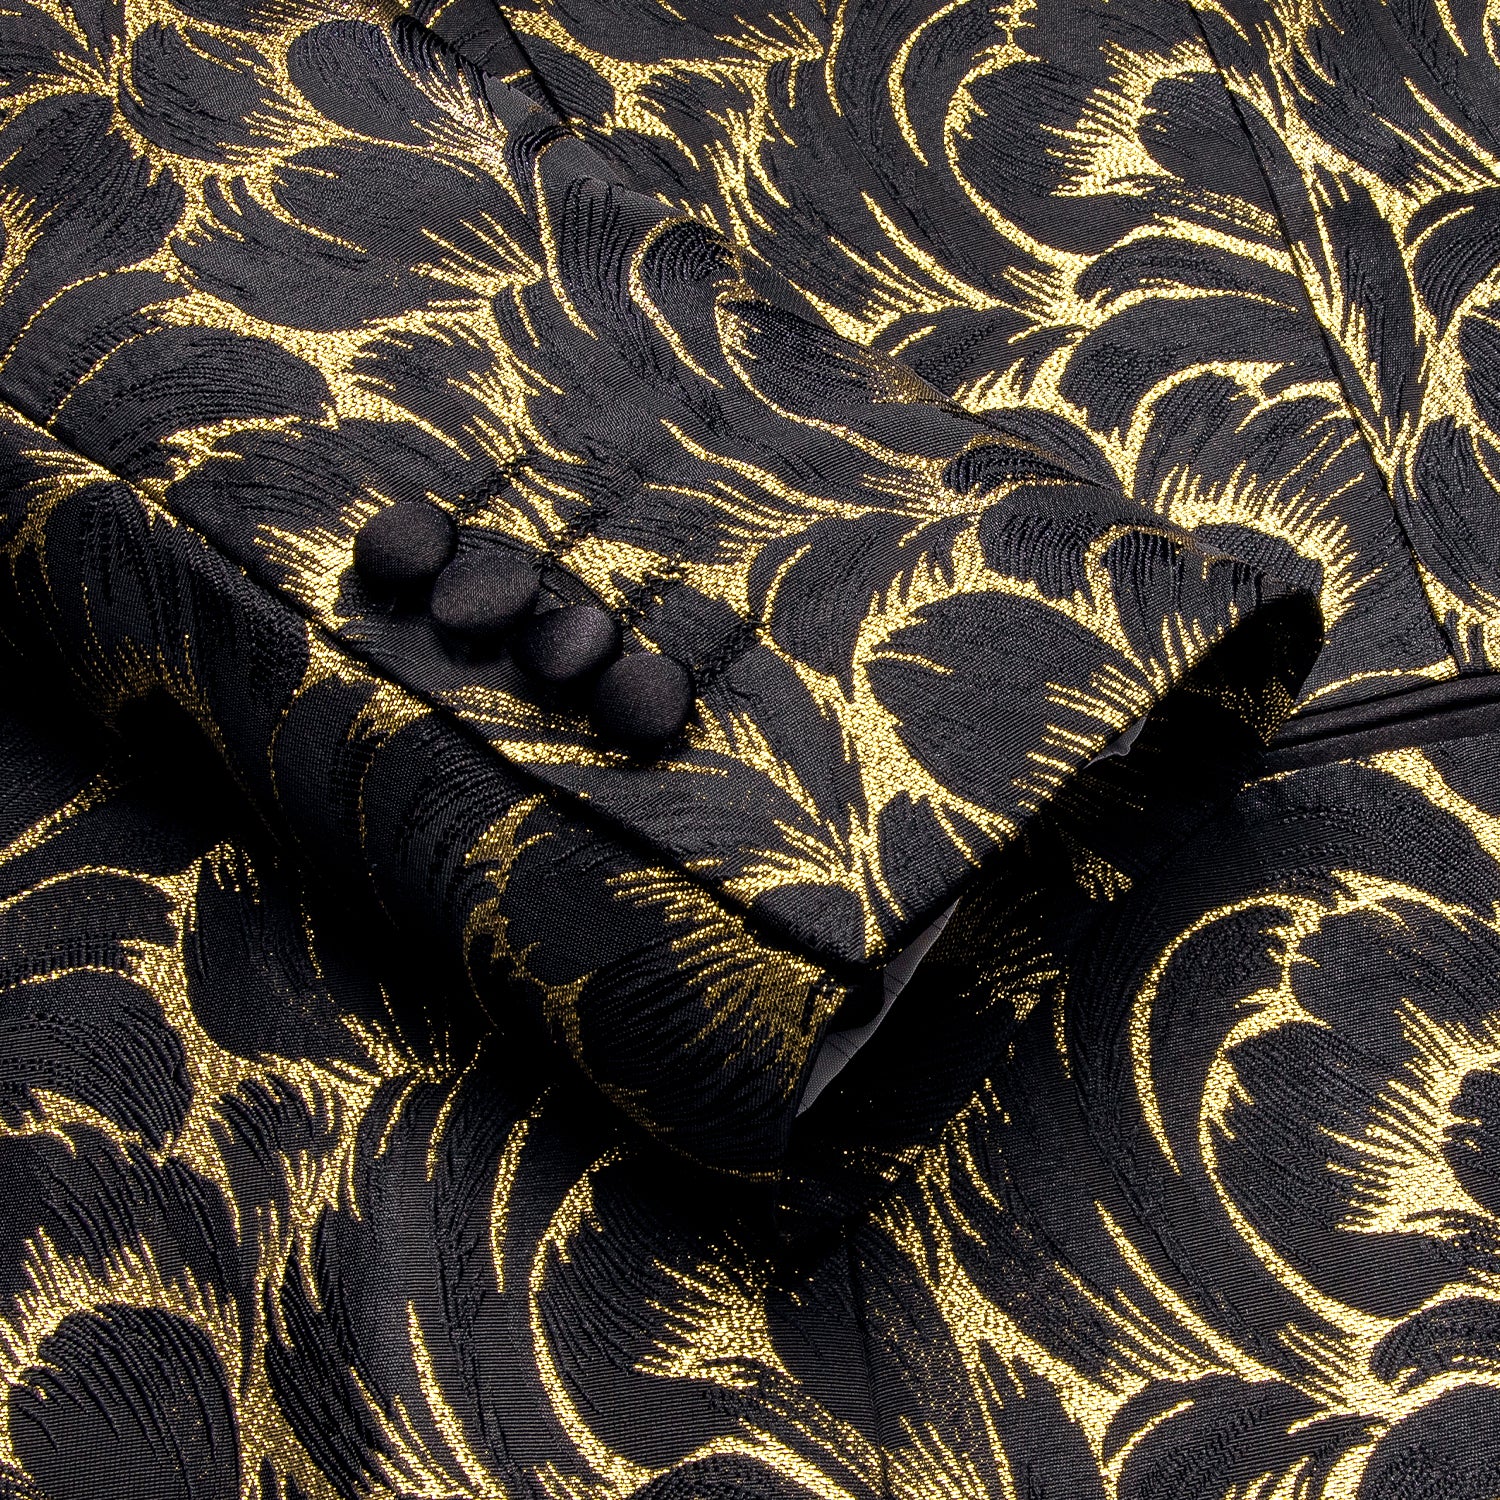 Luxury Black Gold Feather Men's Suit Set